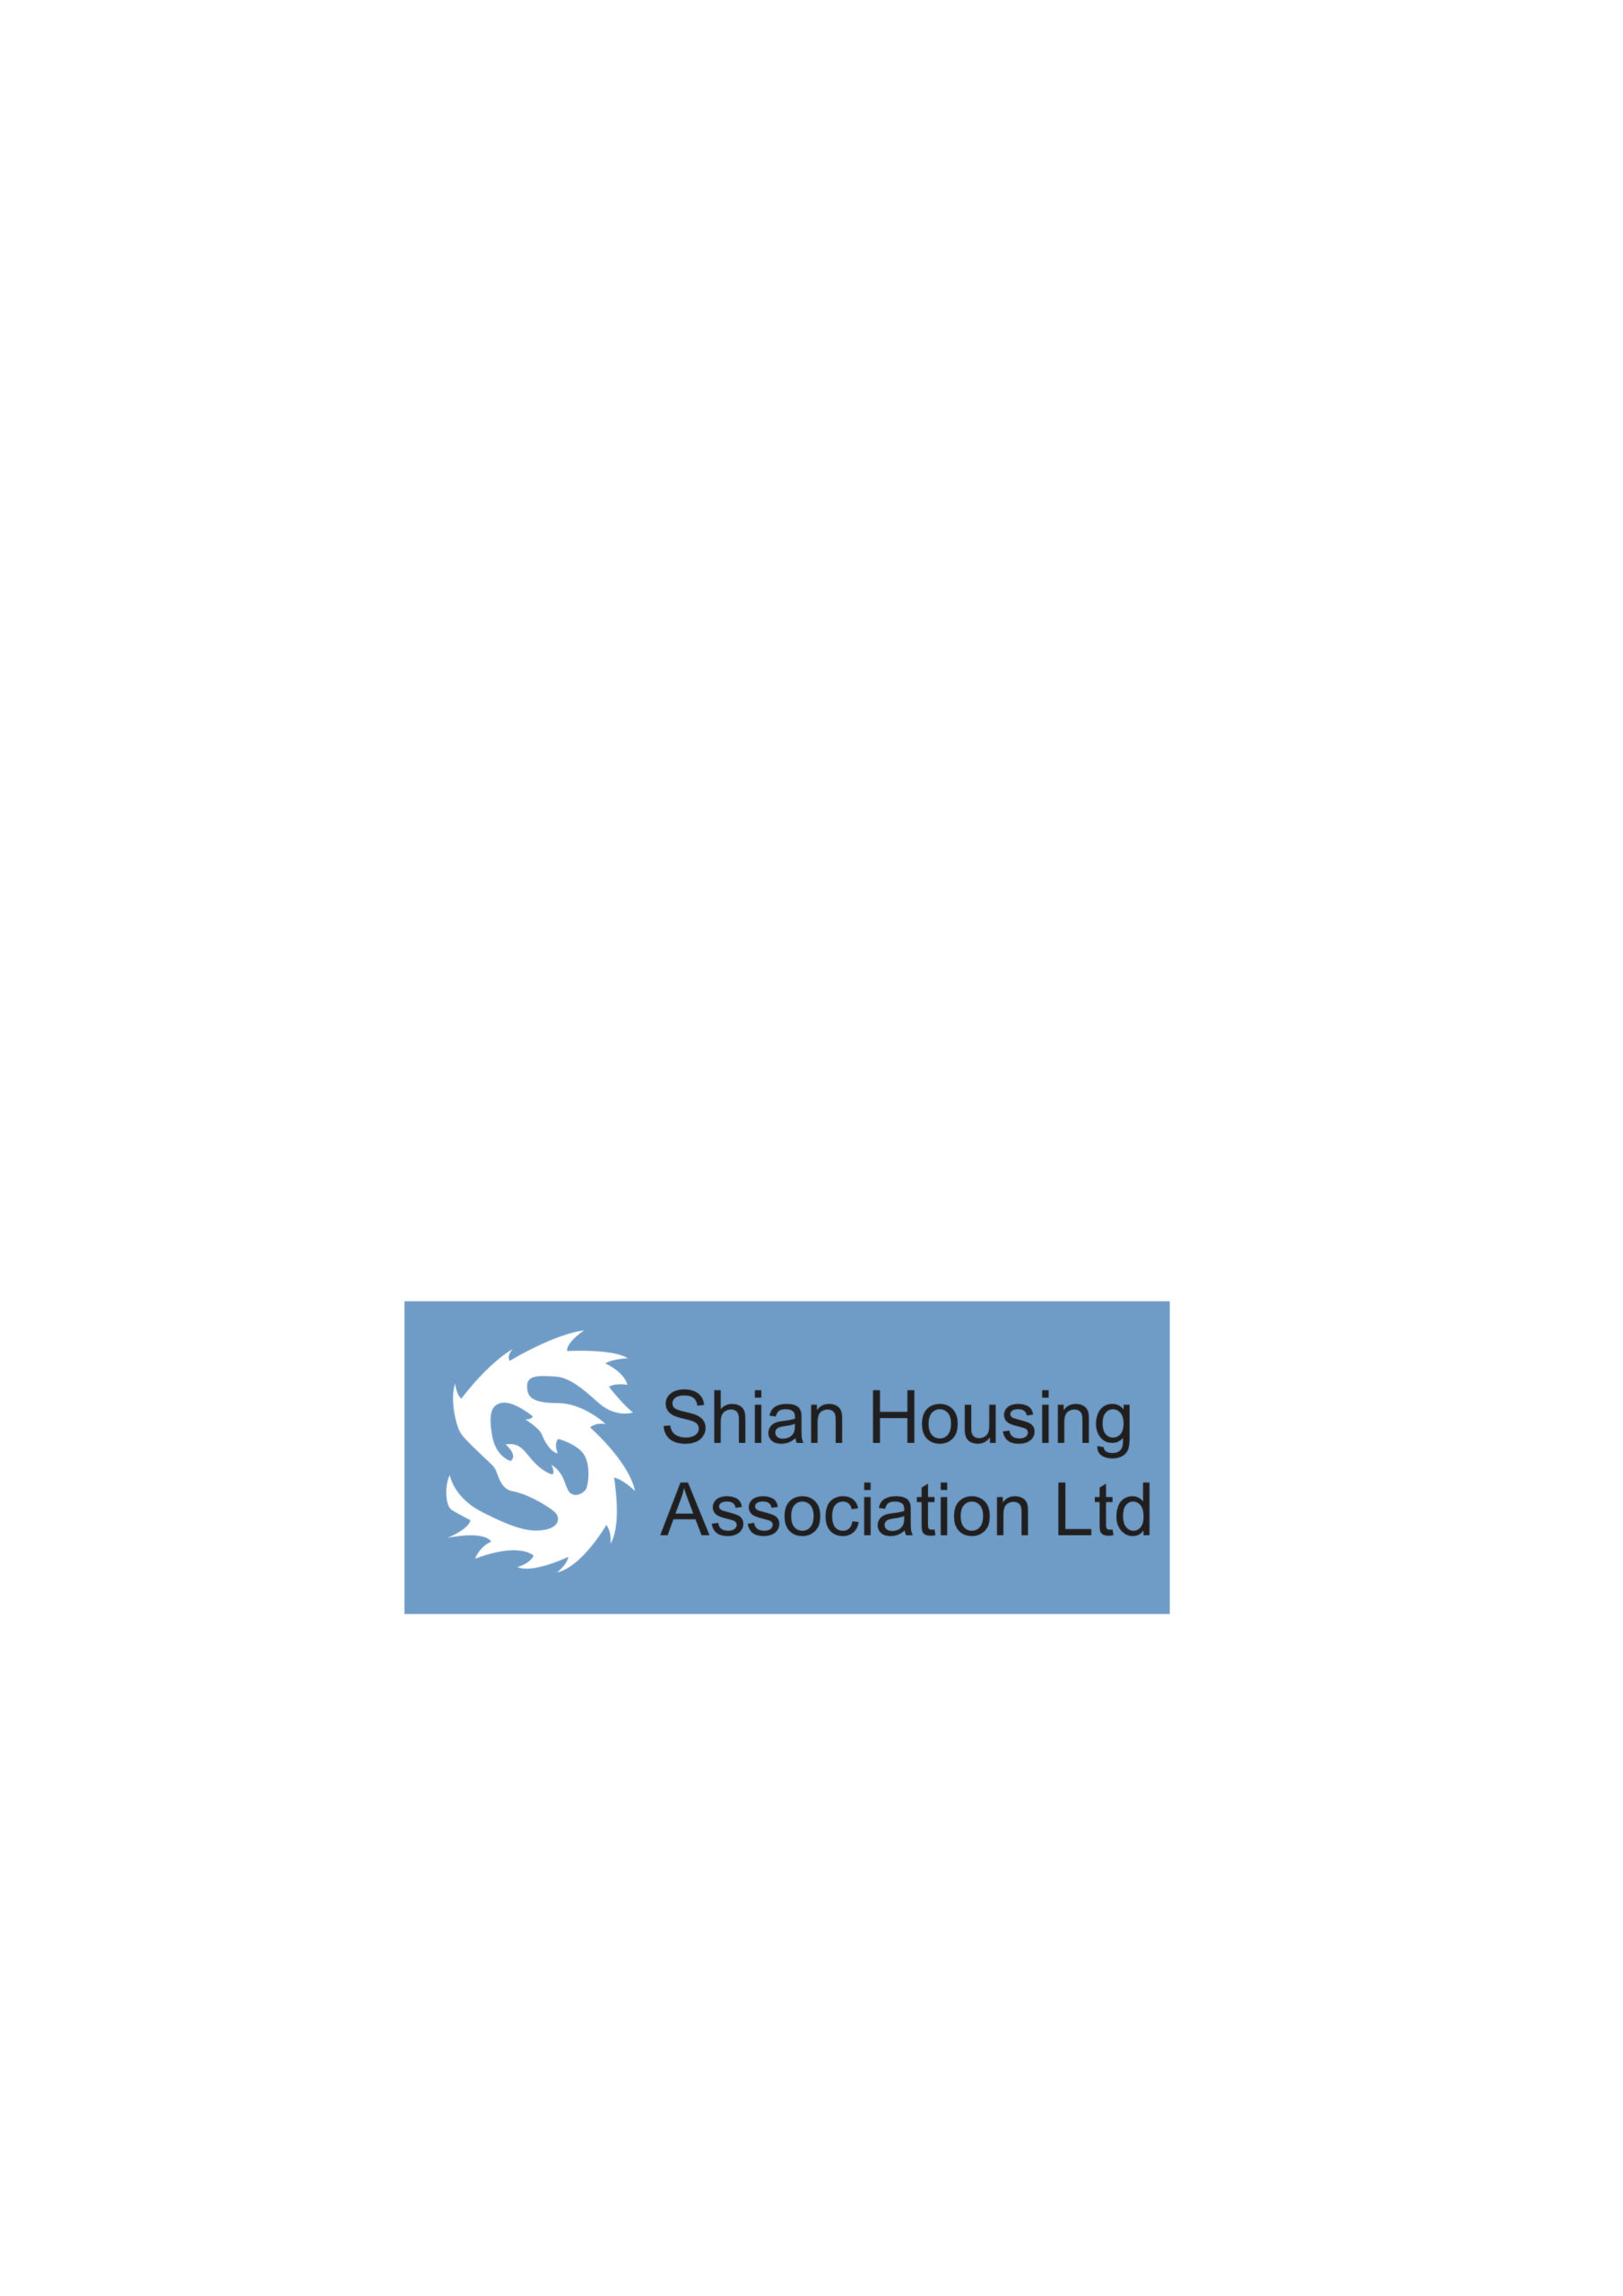 Shian Housing Association Logo2